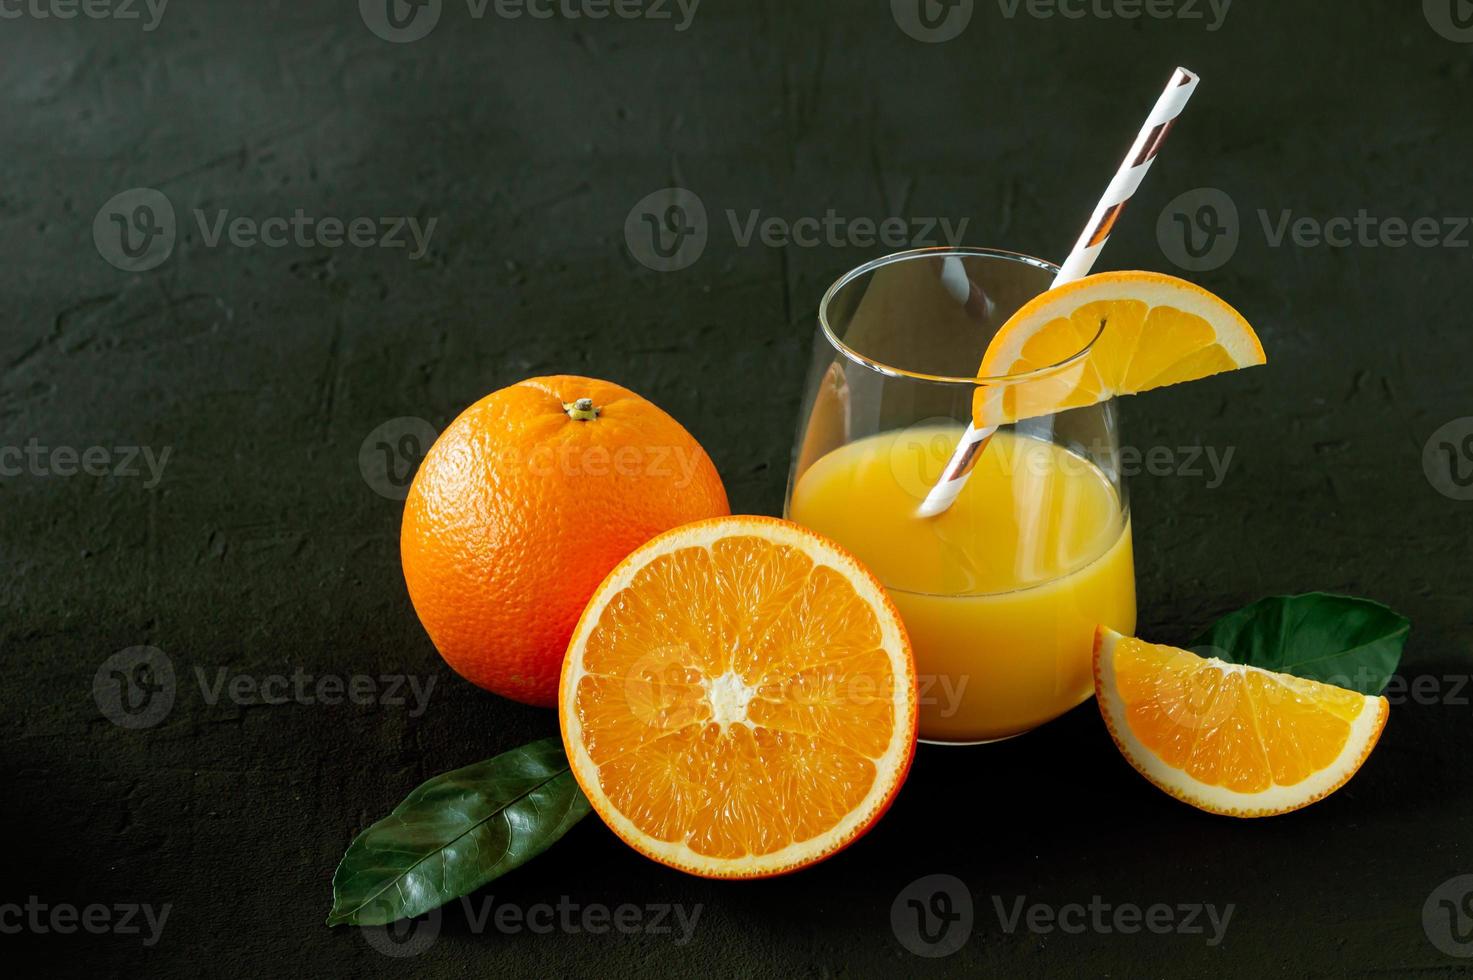 Glas frisch gepresster Orangensaft mit frischen Früchten auf schwarzem Hintergrund foto